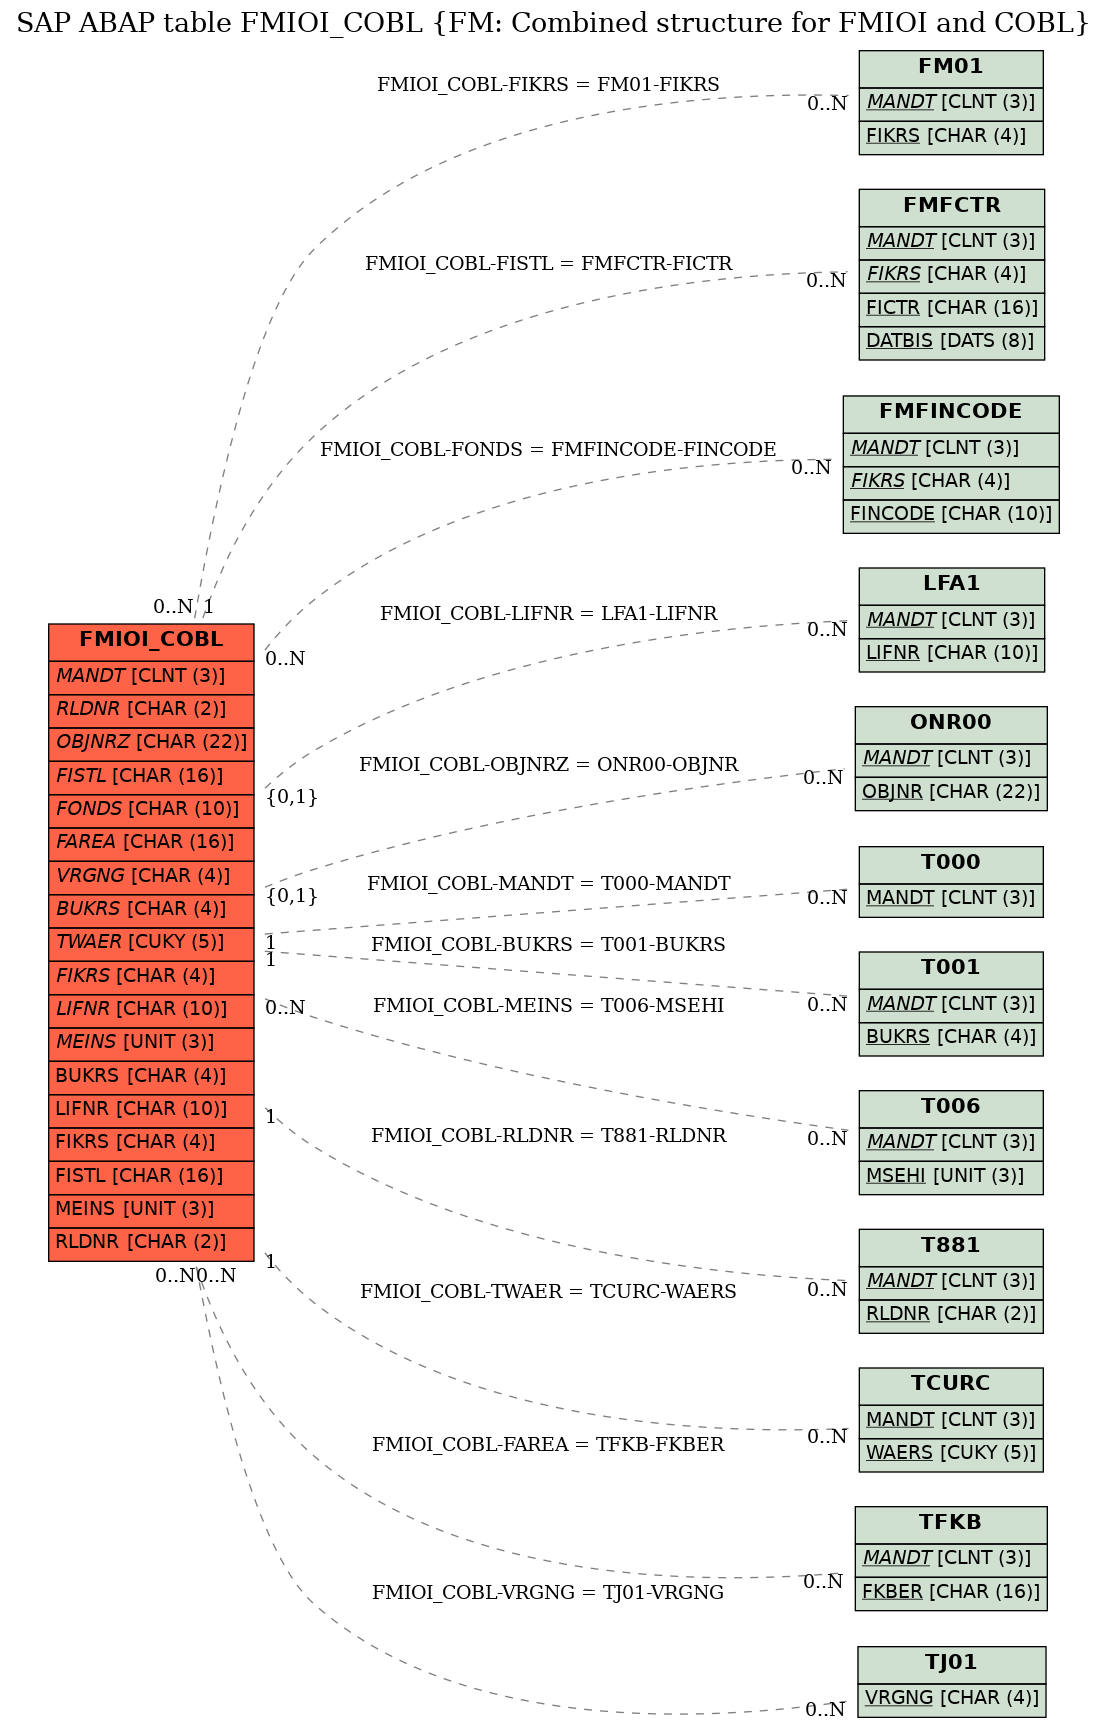 E-R Diagram for table FMIOI_COBL (FM: Combined structure for FMIOI and COBL)